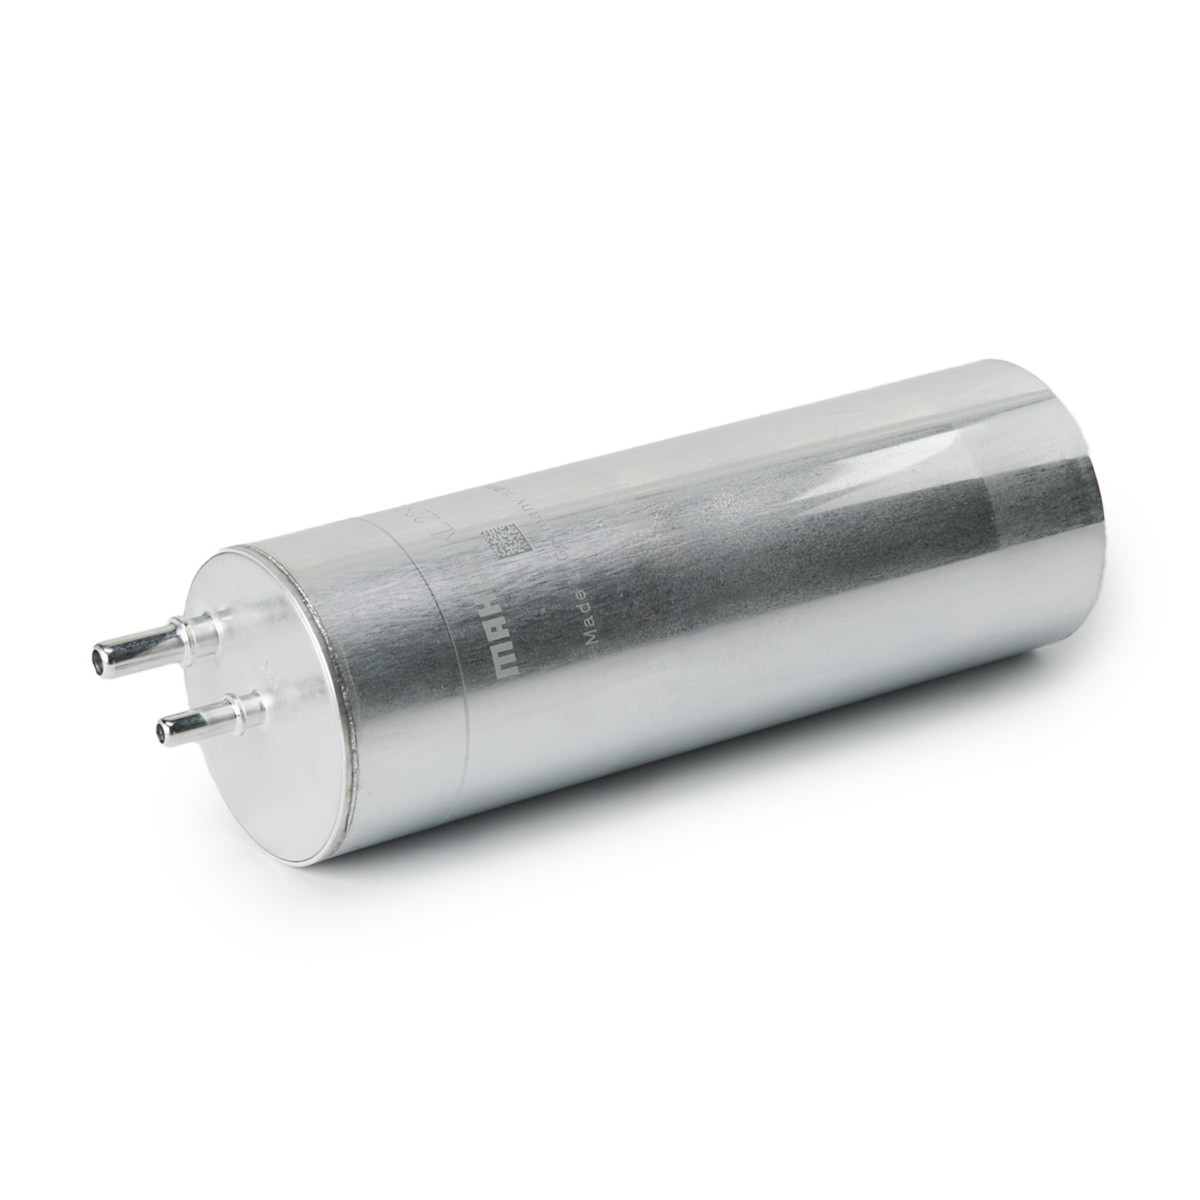 MAHLE ORIGINAL KL 229/5 Fuel filter In-Line Filter, 10mm, 7,9mm